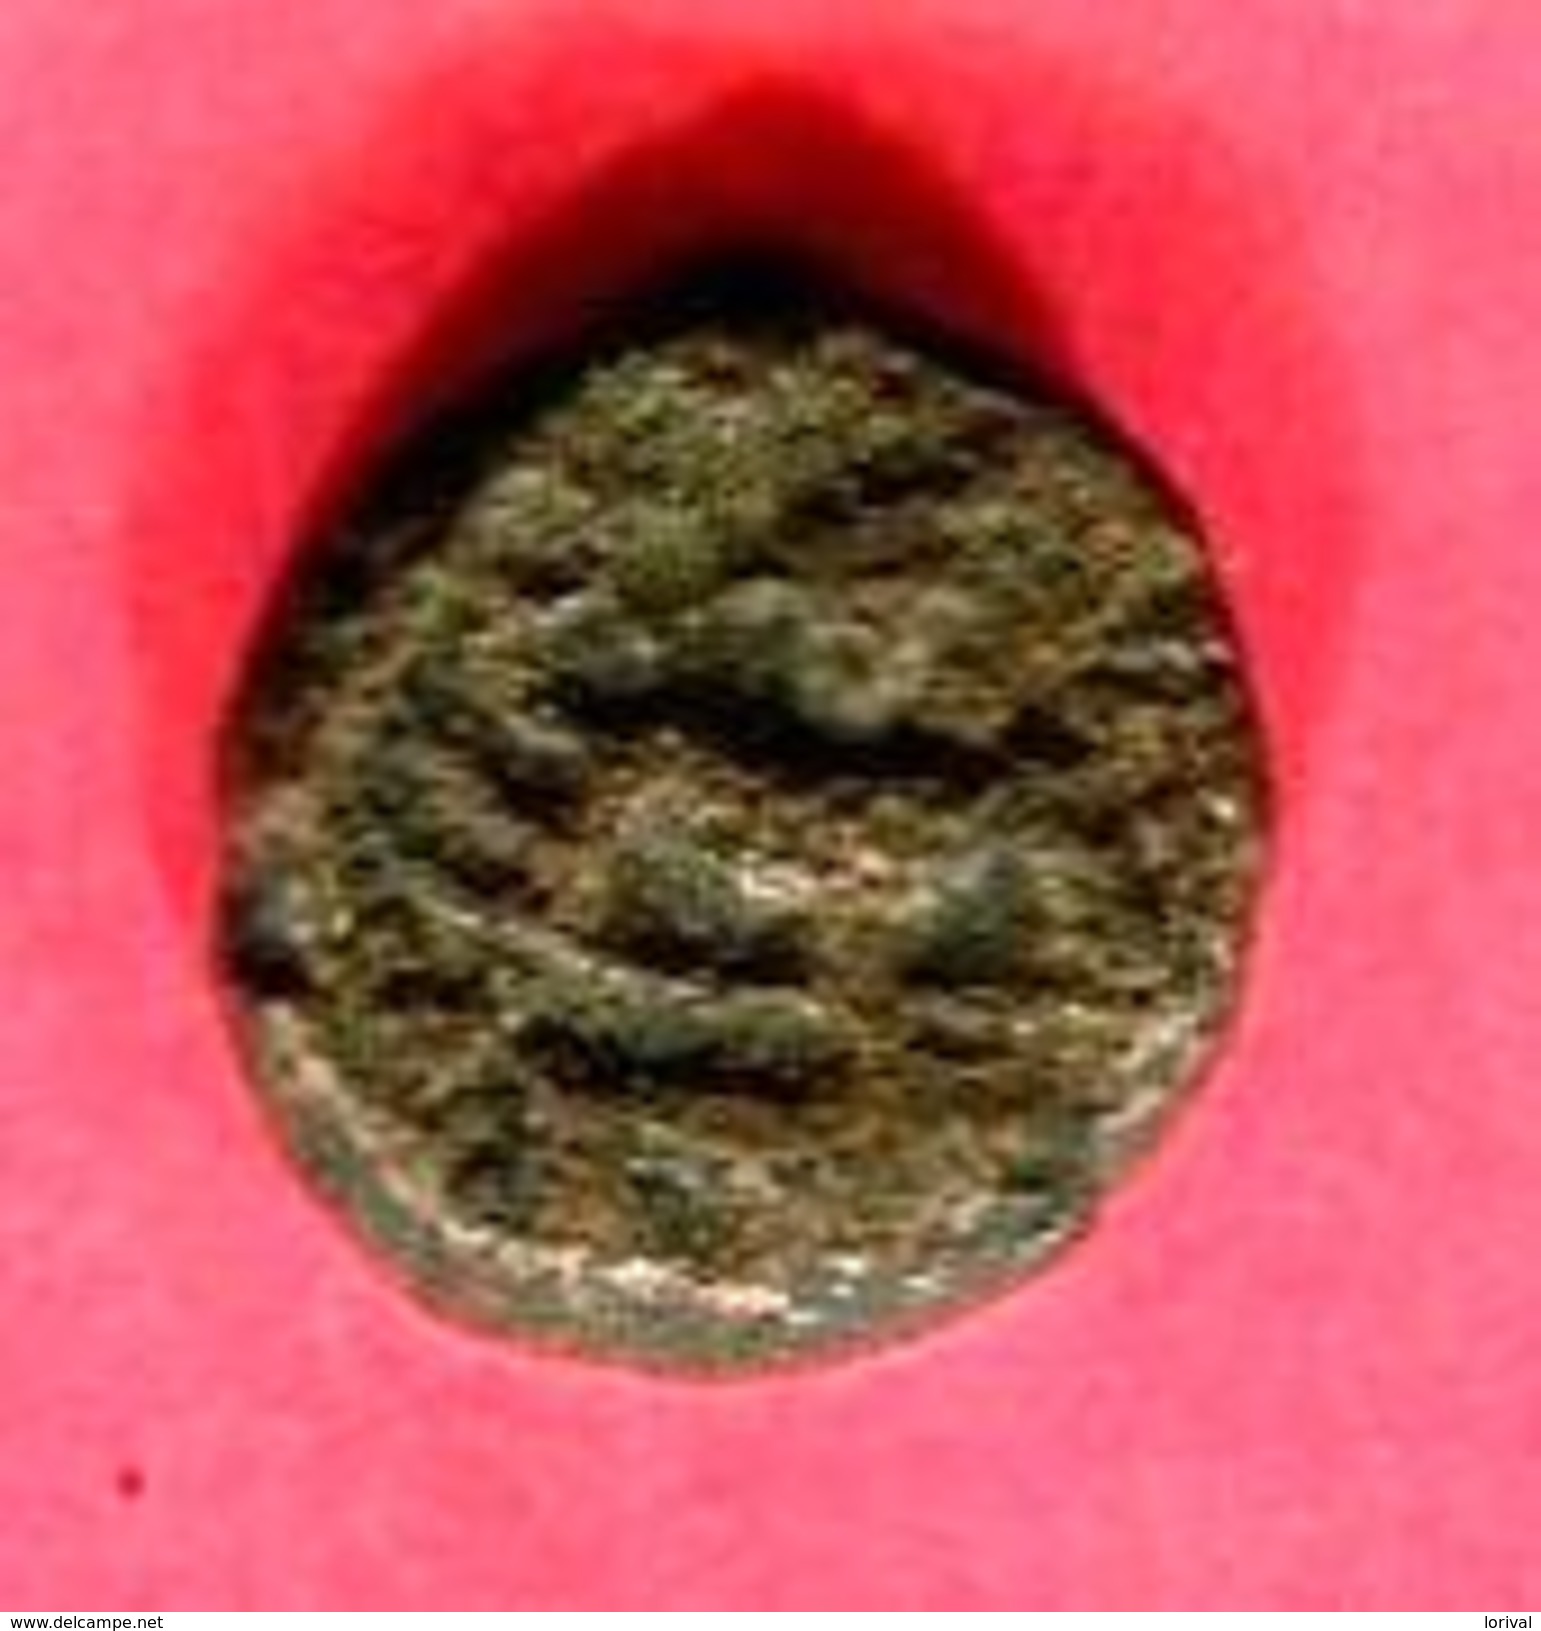 VIJANAGAR VISHNOU   (M 916) TB 7 - Indische Münzen